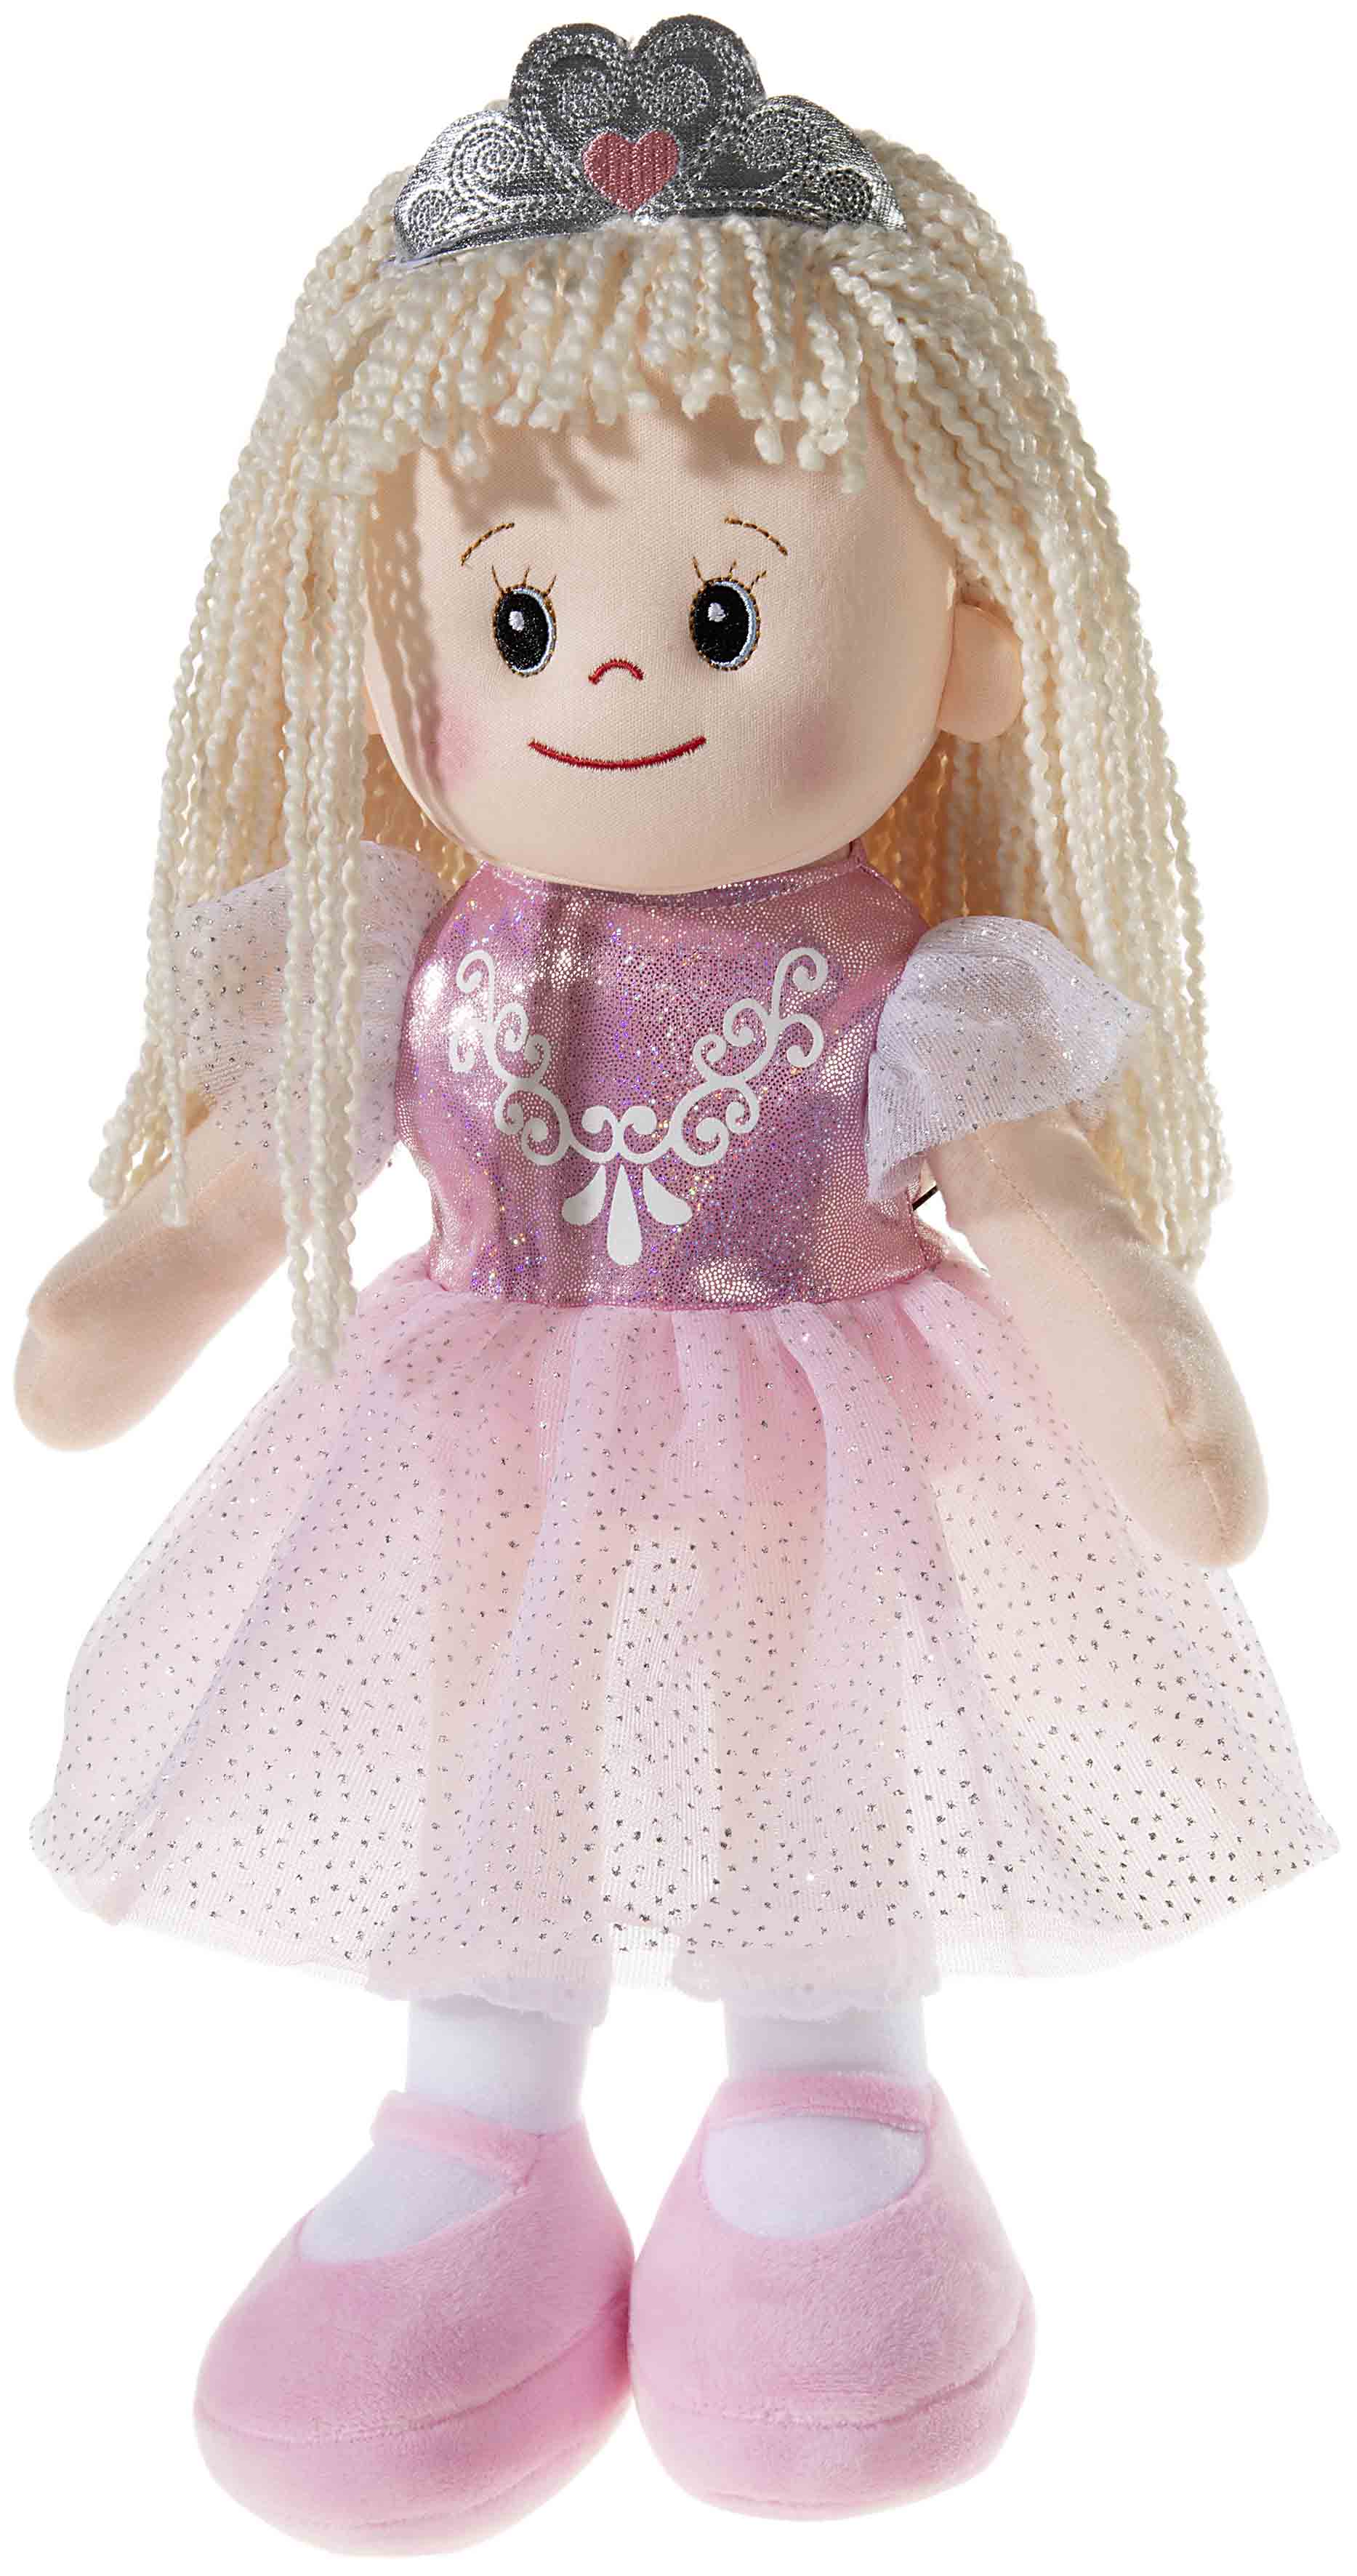 Poupetta Prinzessin Plüsch Puppe 40cm